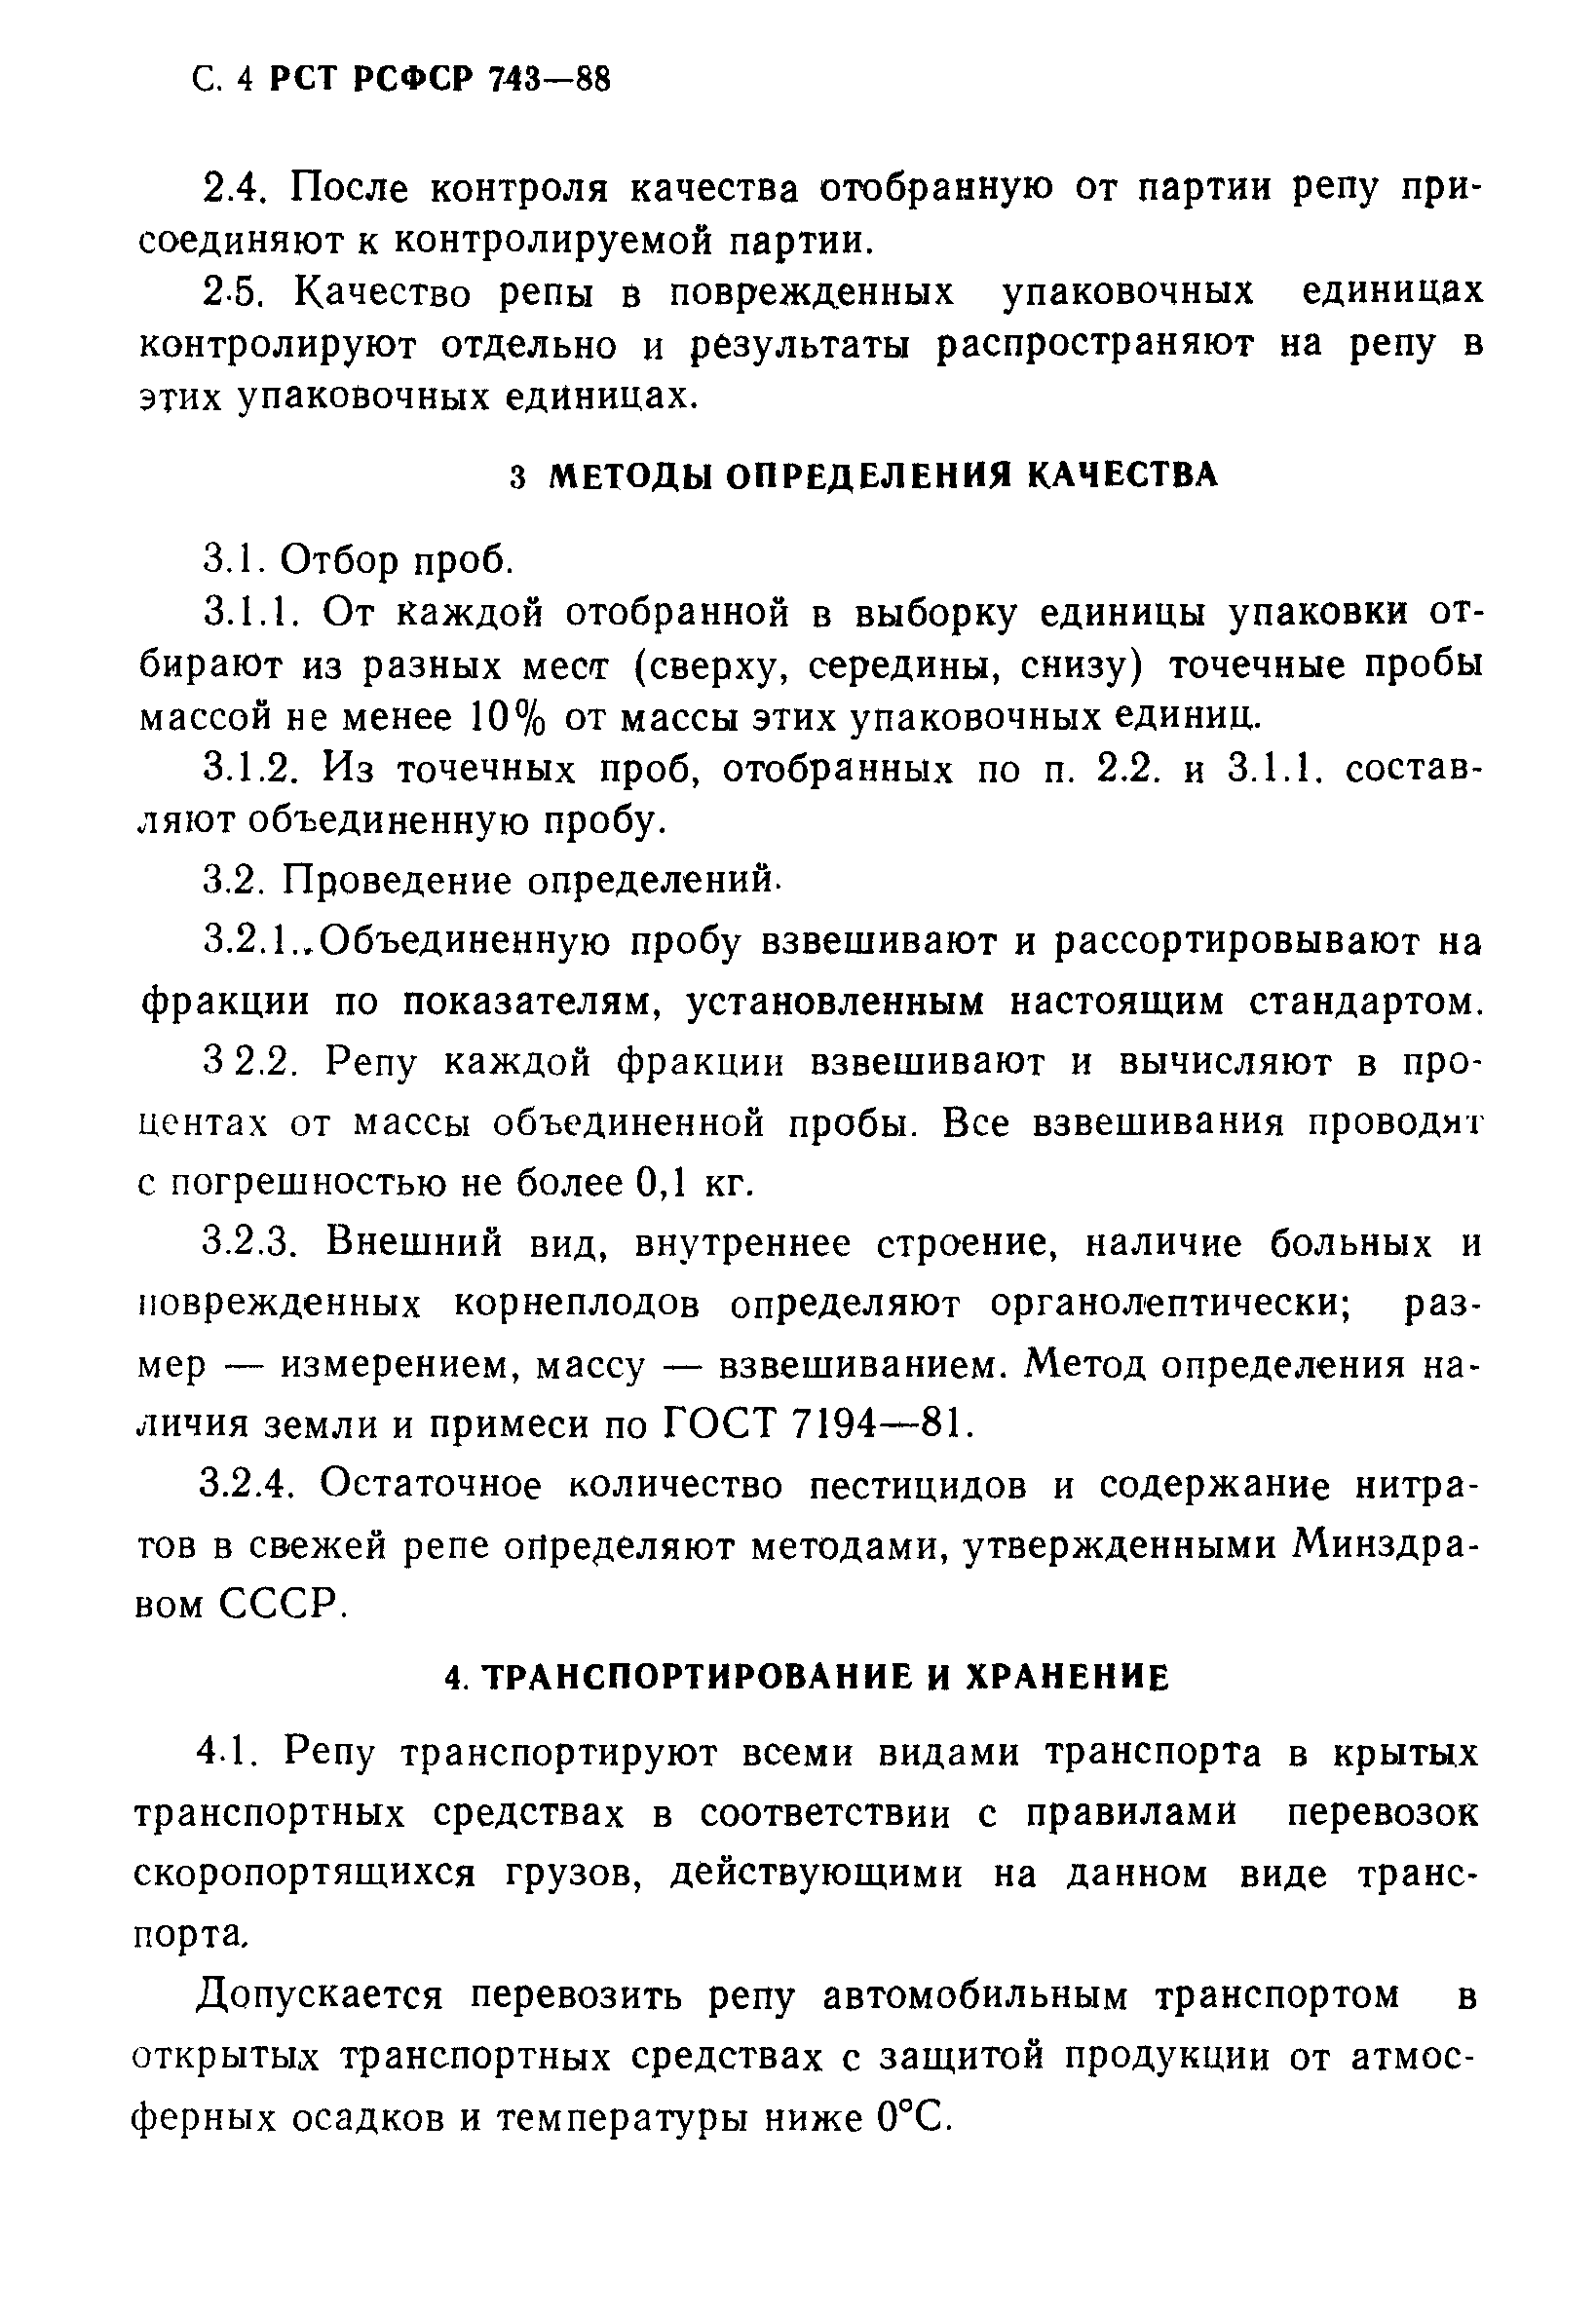 РСТ РСФСР 743-88